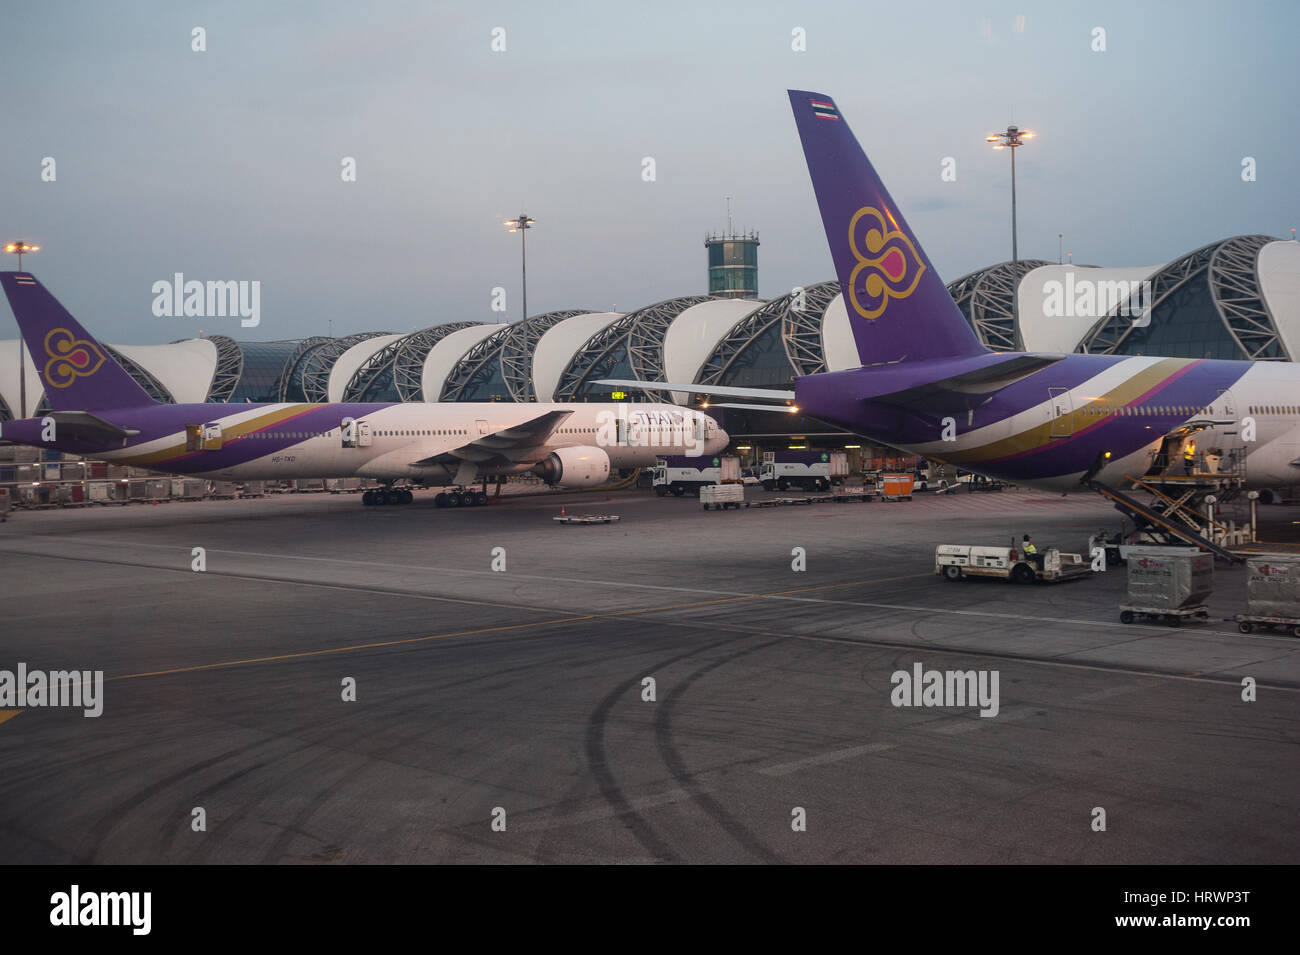 25.01.2017, Bangkok, Thaïlande, Asie - Thai Airways les avions sont garés à une porte à l'aéroport Suvarnabhumi de Bangkok. Banque D'Images